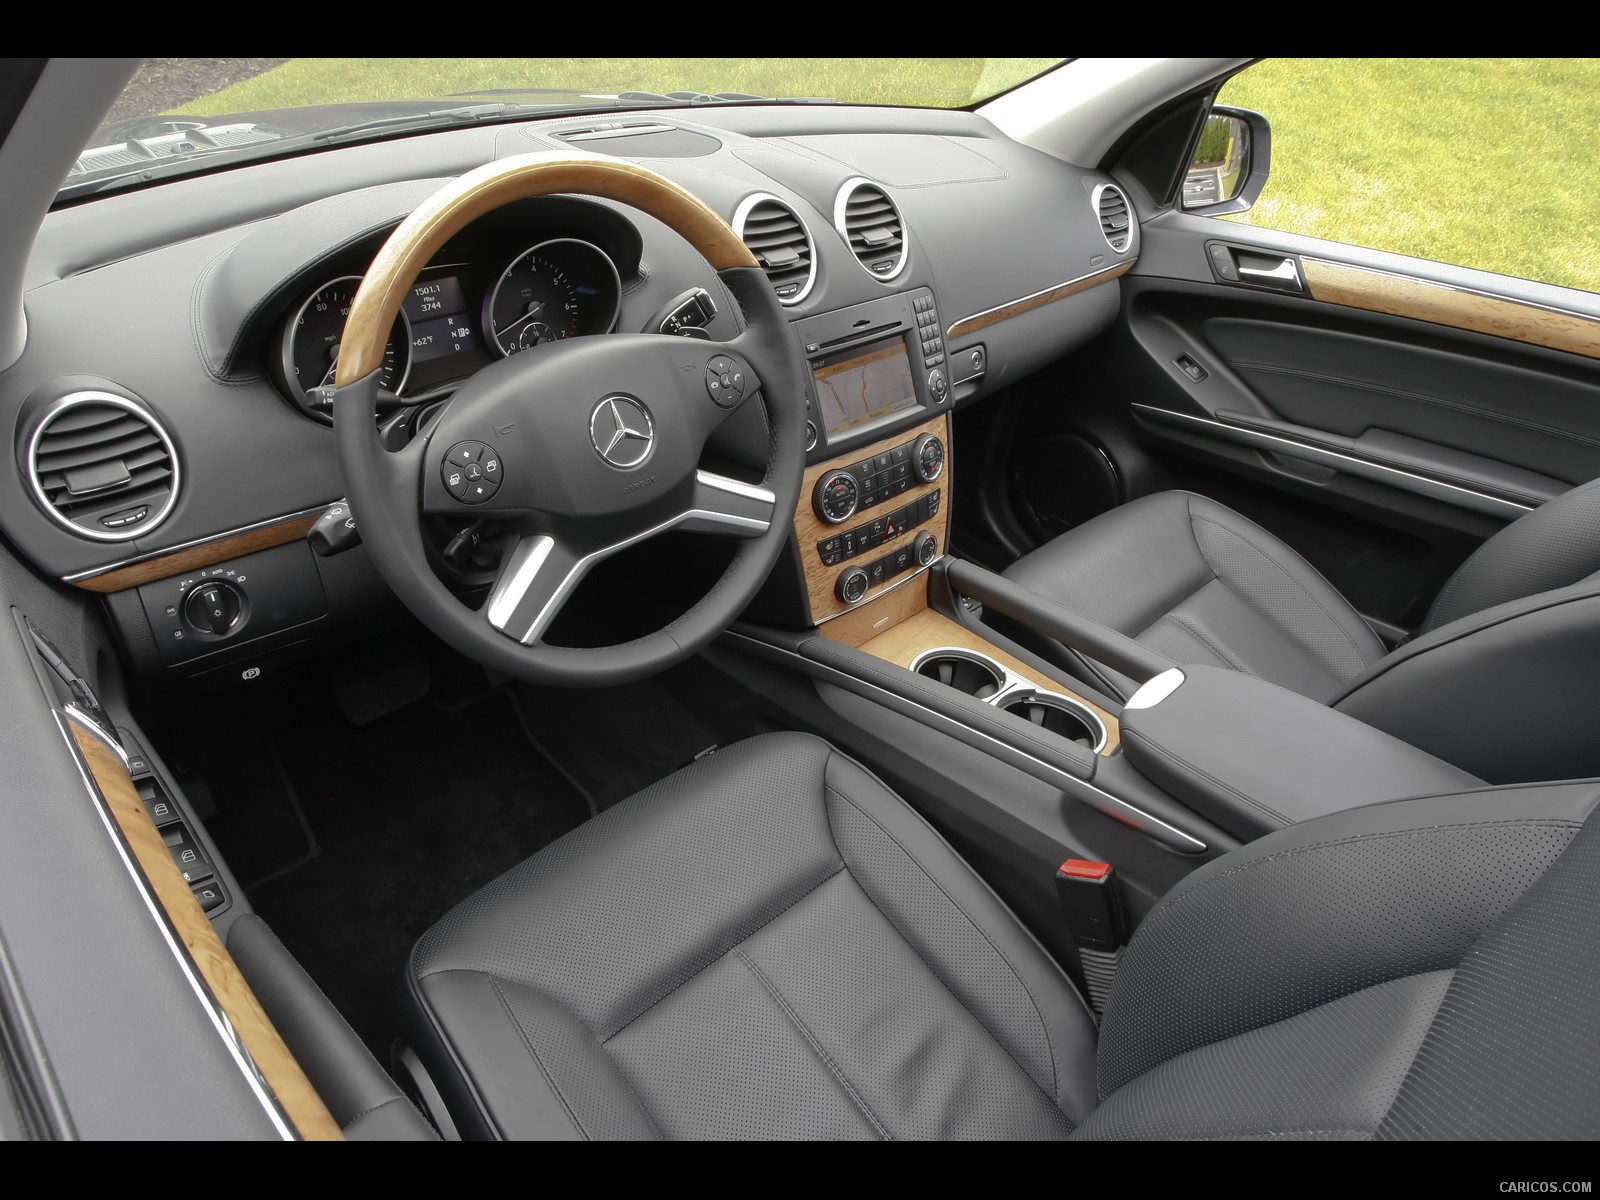 2010 Mercedes-Benz GL550 - Interior, #62 of 112